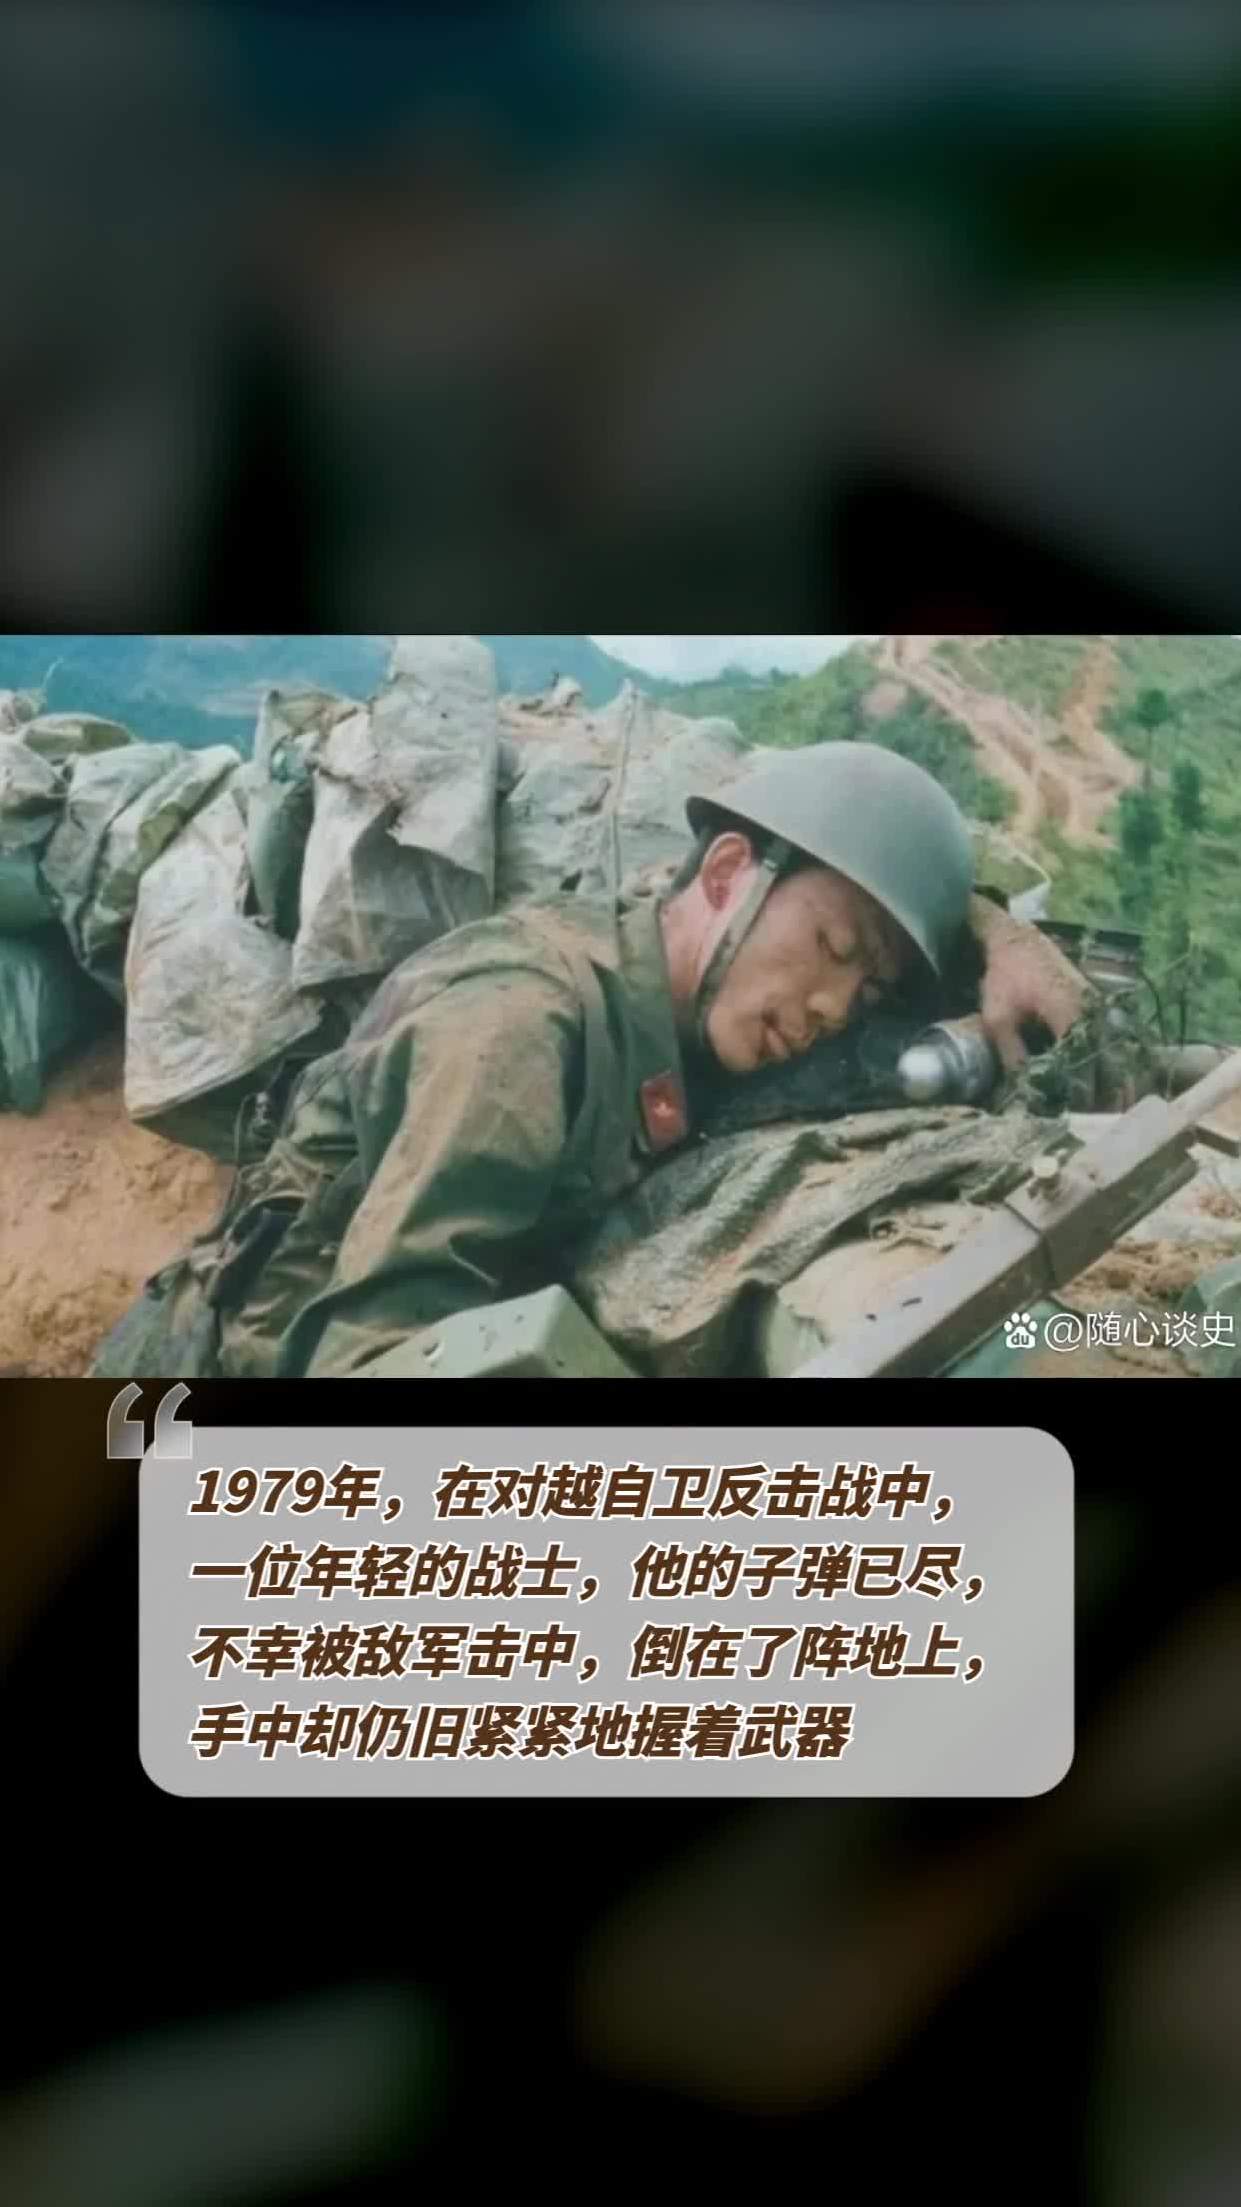 1979年,在对越自卫反击战中,一位年轻的战士,他的子弹已尽,不幸被敌军